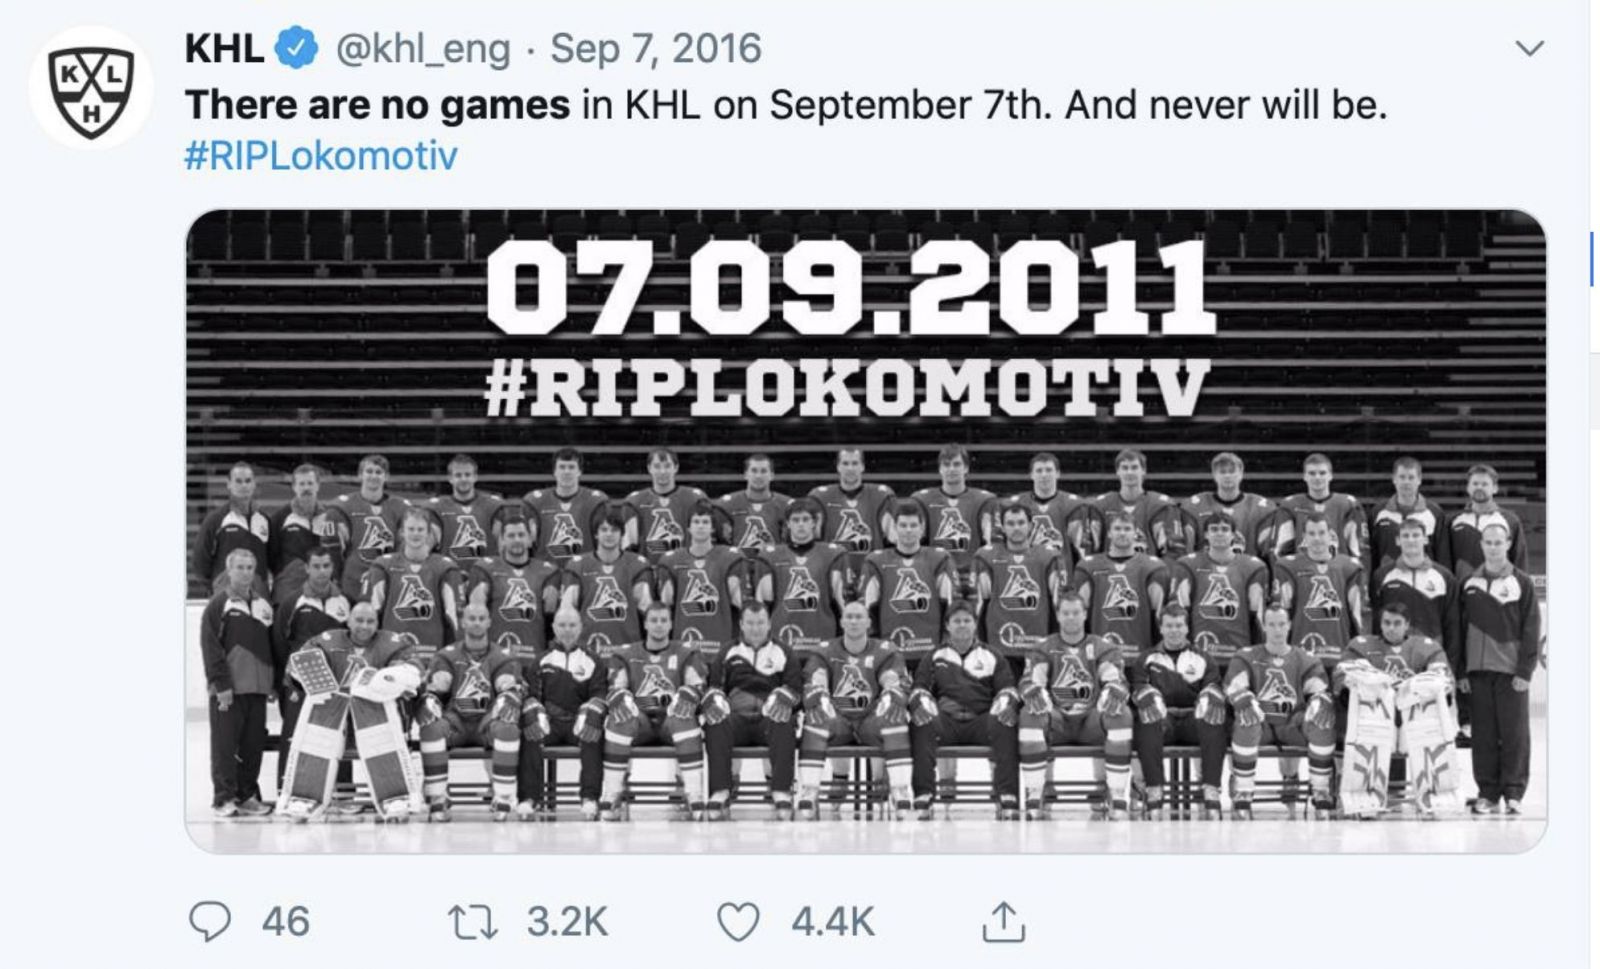 8 let od největší tragédie v českém sportu. Pří pádu letadla zahynuli 3 čeští hokejisté, navzdory slibu se dnes hrály 4 zápasy